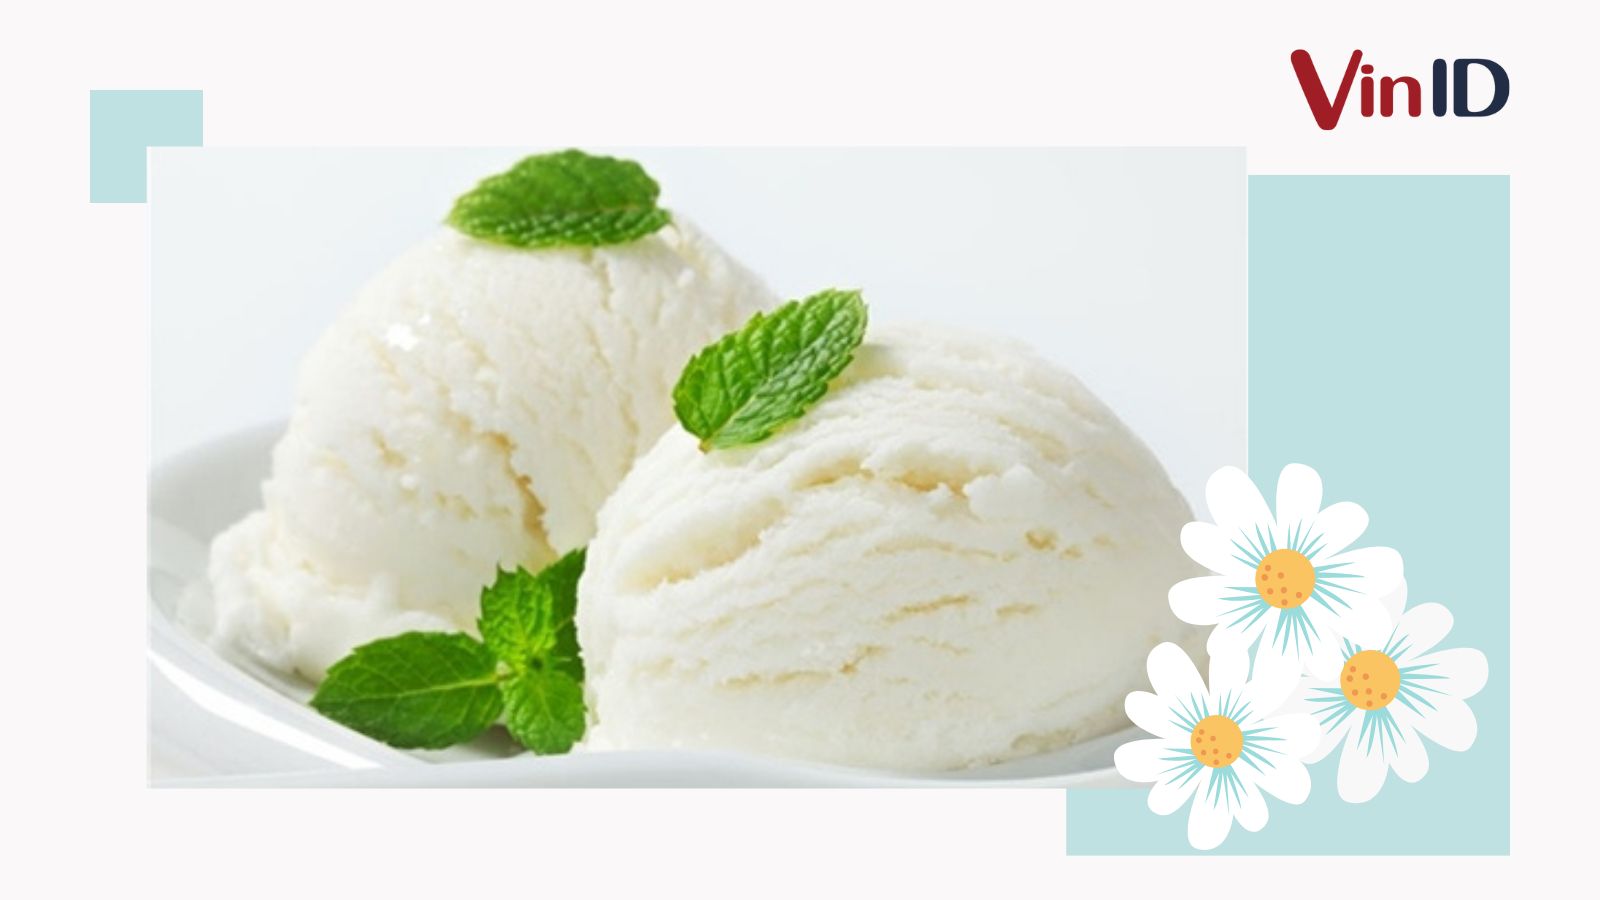 Mách bạn 3 công thức cách làm kem tươi mát lạnh, ăn siêu đã từ các nguyên liệu dễ tìm